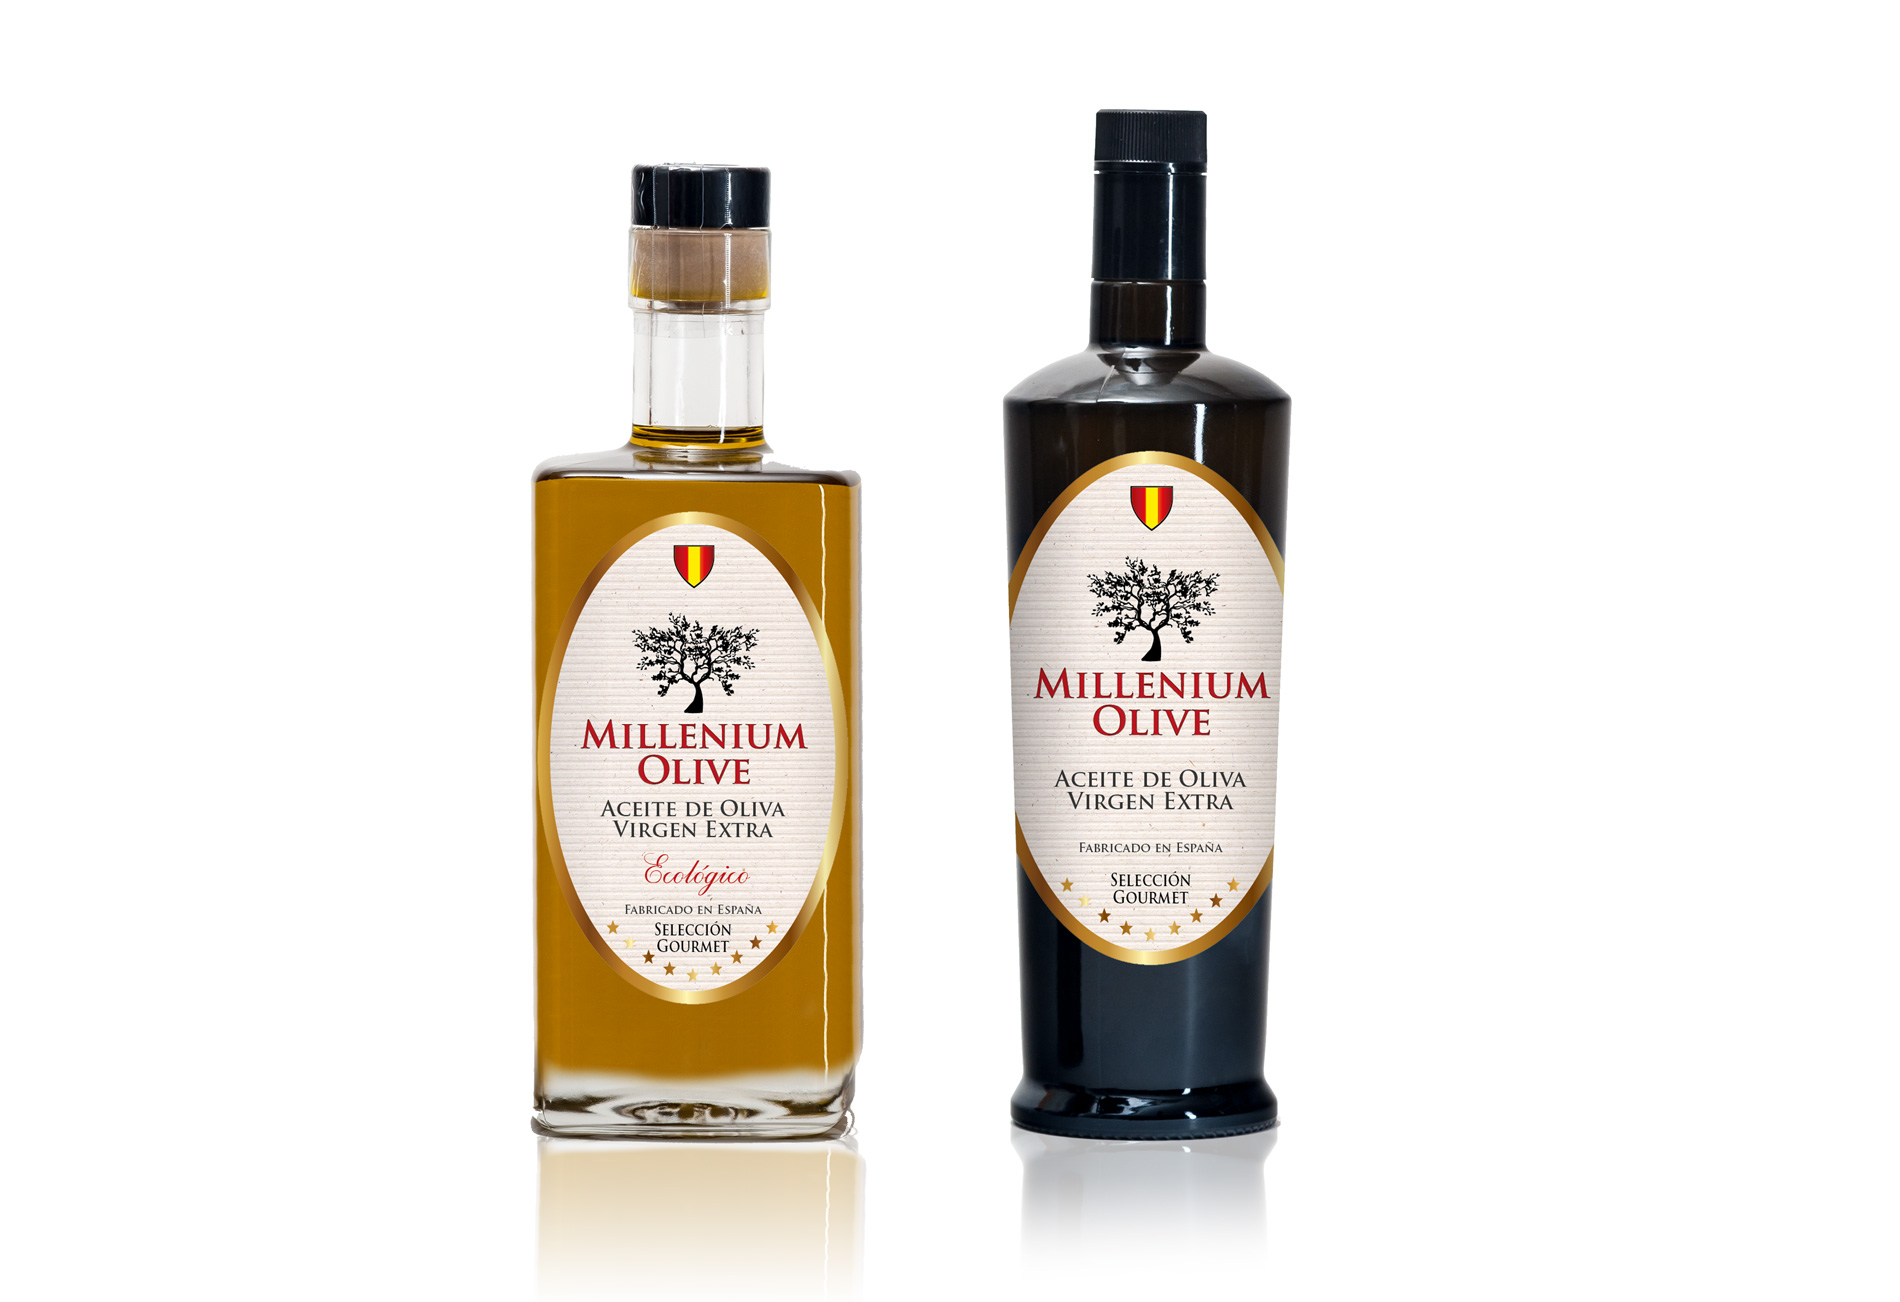 Diseño gráfico y creativo de etiquetas de aceite de oliva virgen extra para la marca MILLENIUM OLIVE OIL